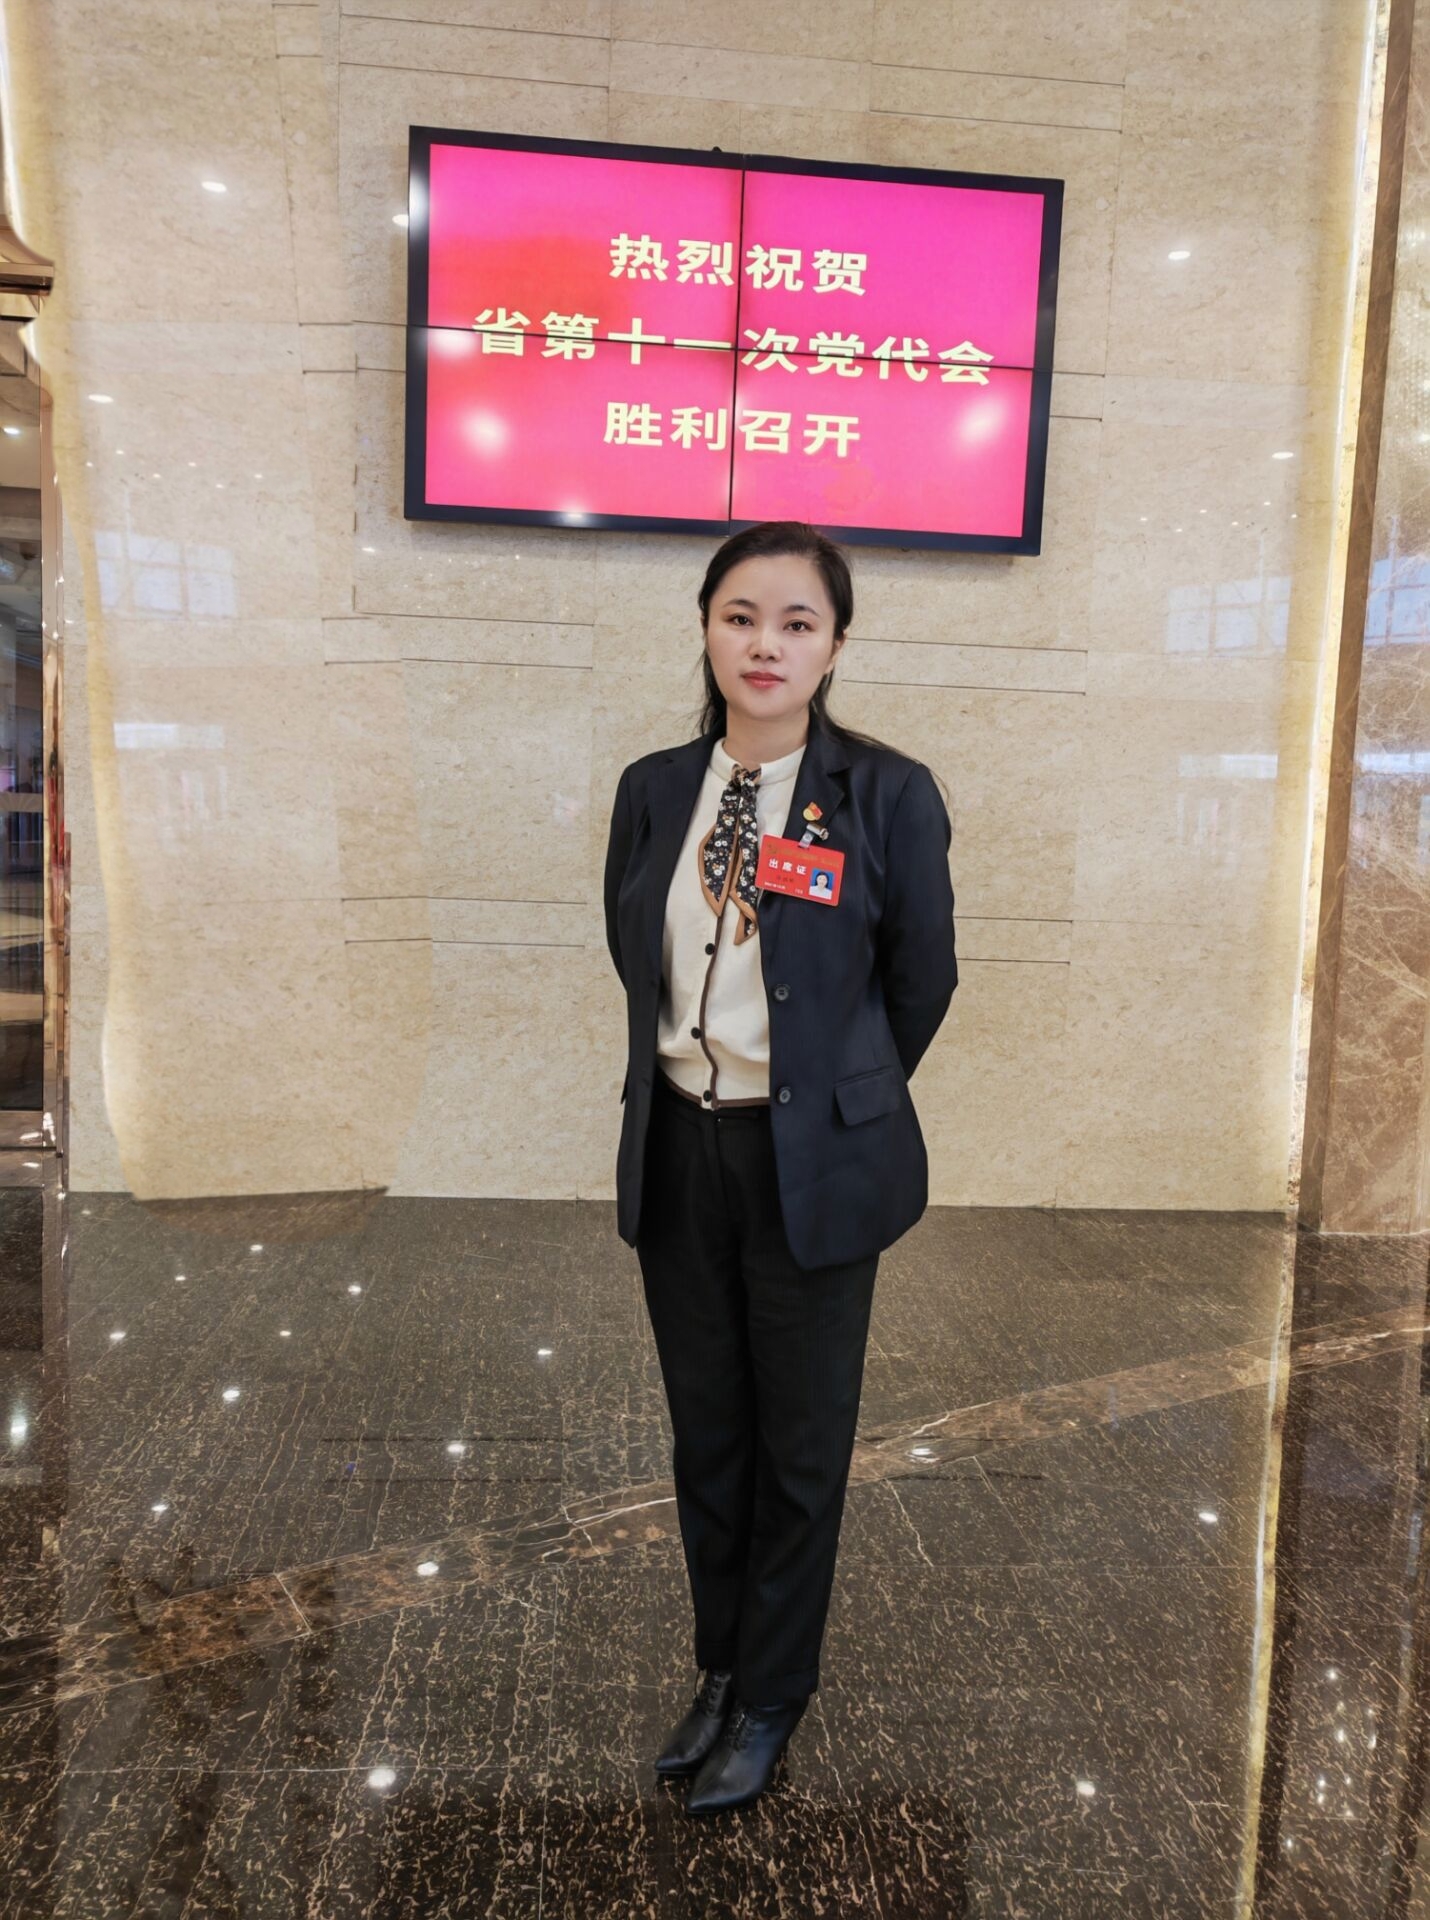 我校毕胜琴老师参加中国共产党安徽省第十一次代表大会